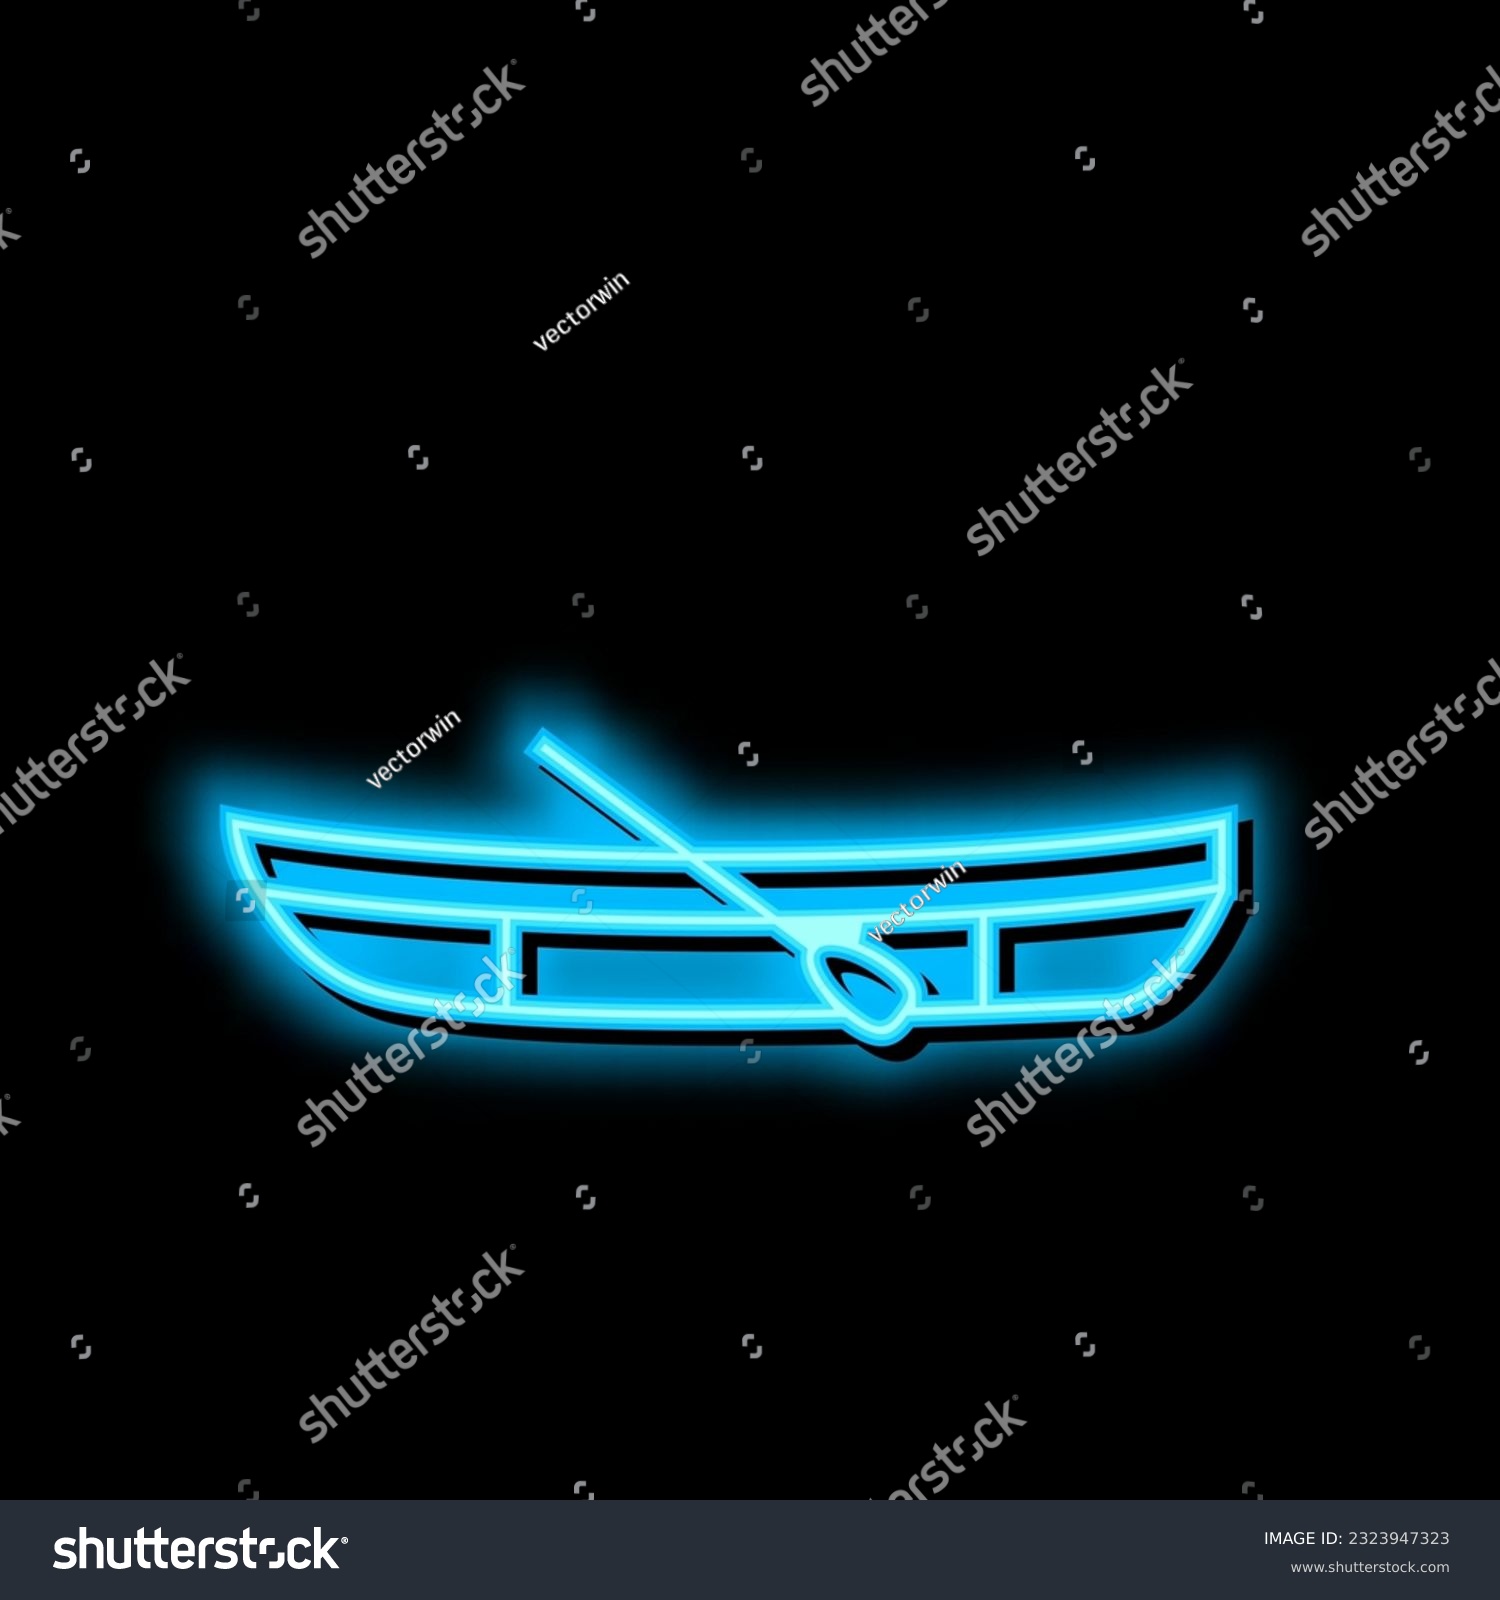 SVG of dinghy boat neon light sign vector. dinghy boat illustration svg